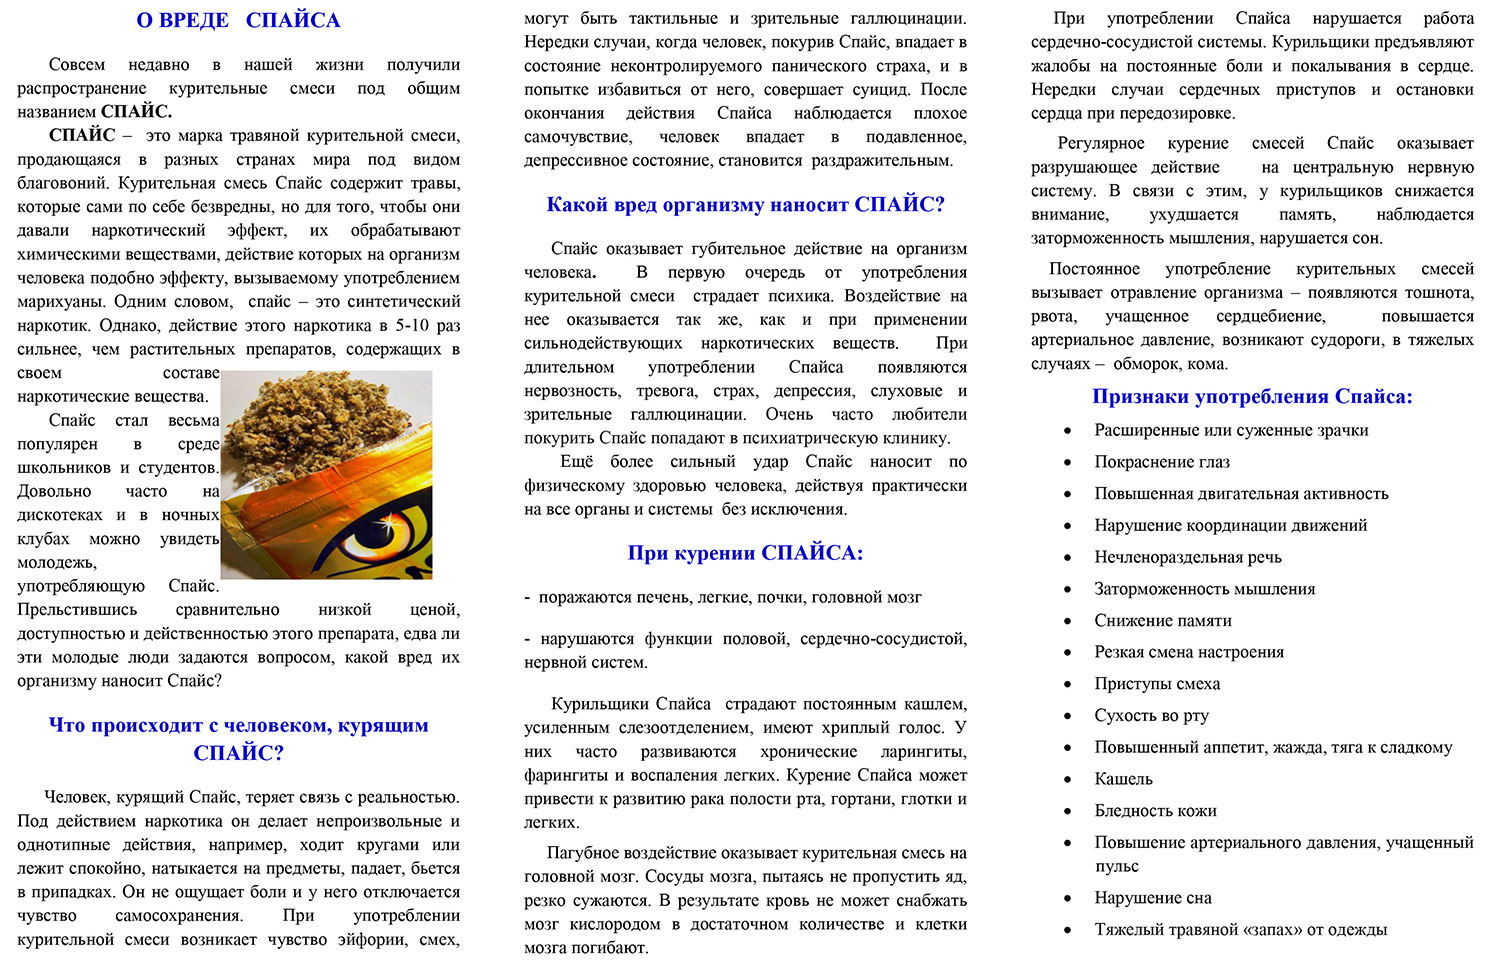 Информация о спайсе для подростков браузер тор как настроить русский язык гидра